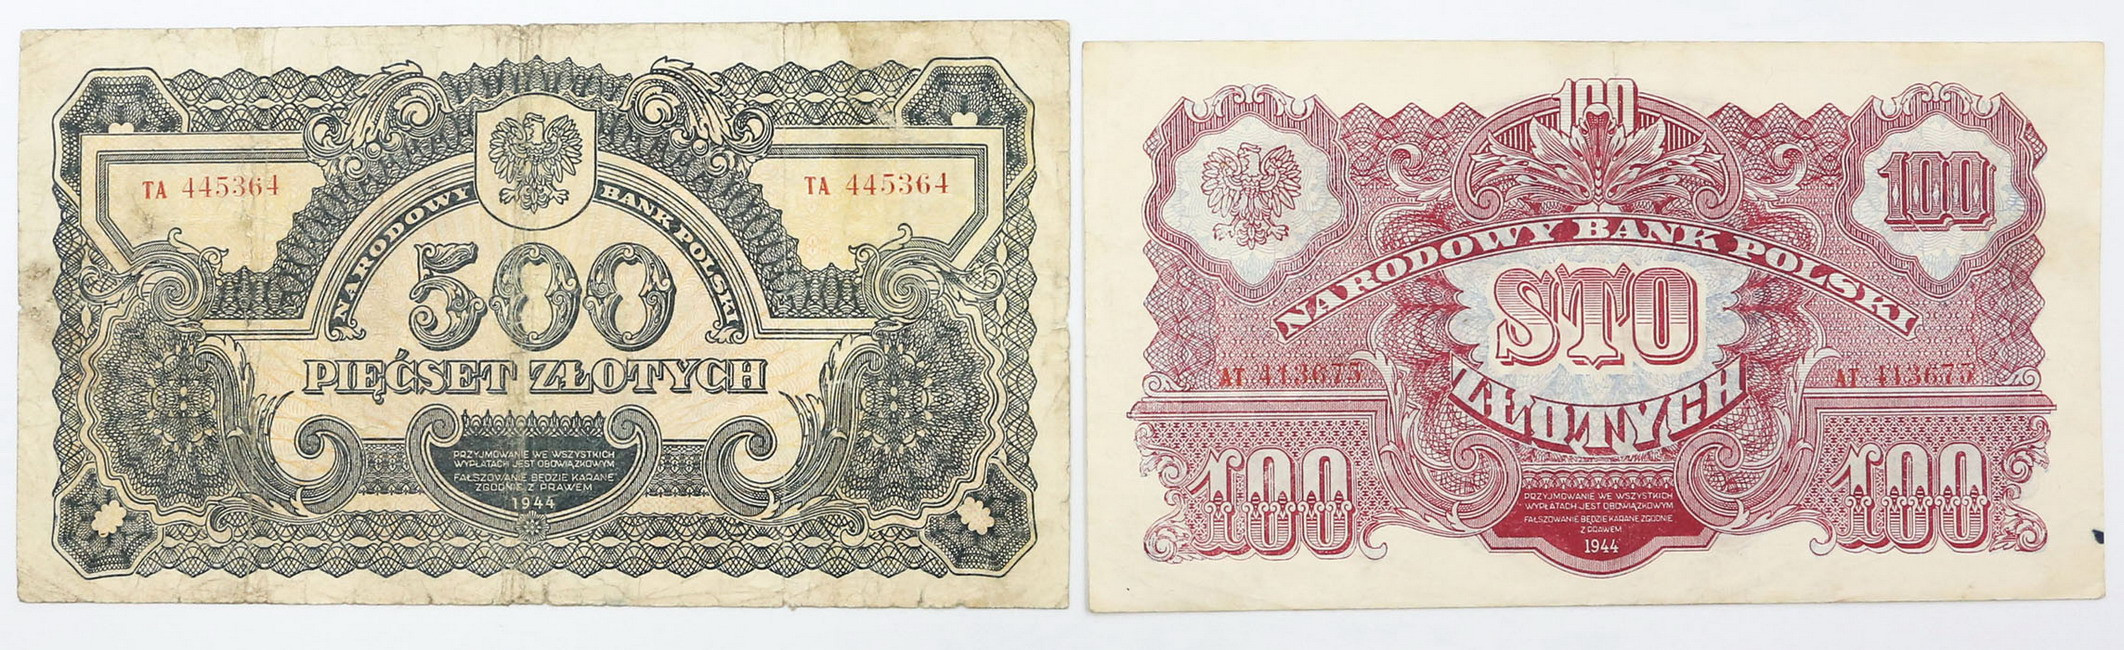 100, 500 złotych 1944, zestaw 2 banknotów